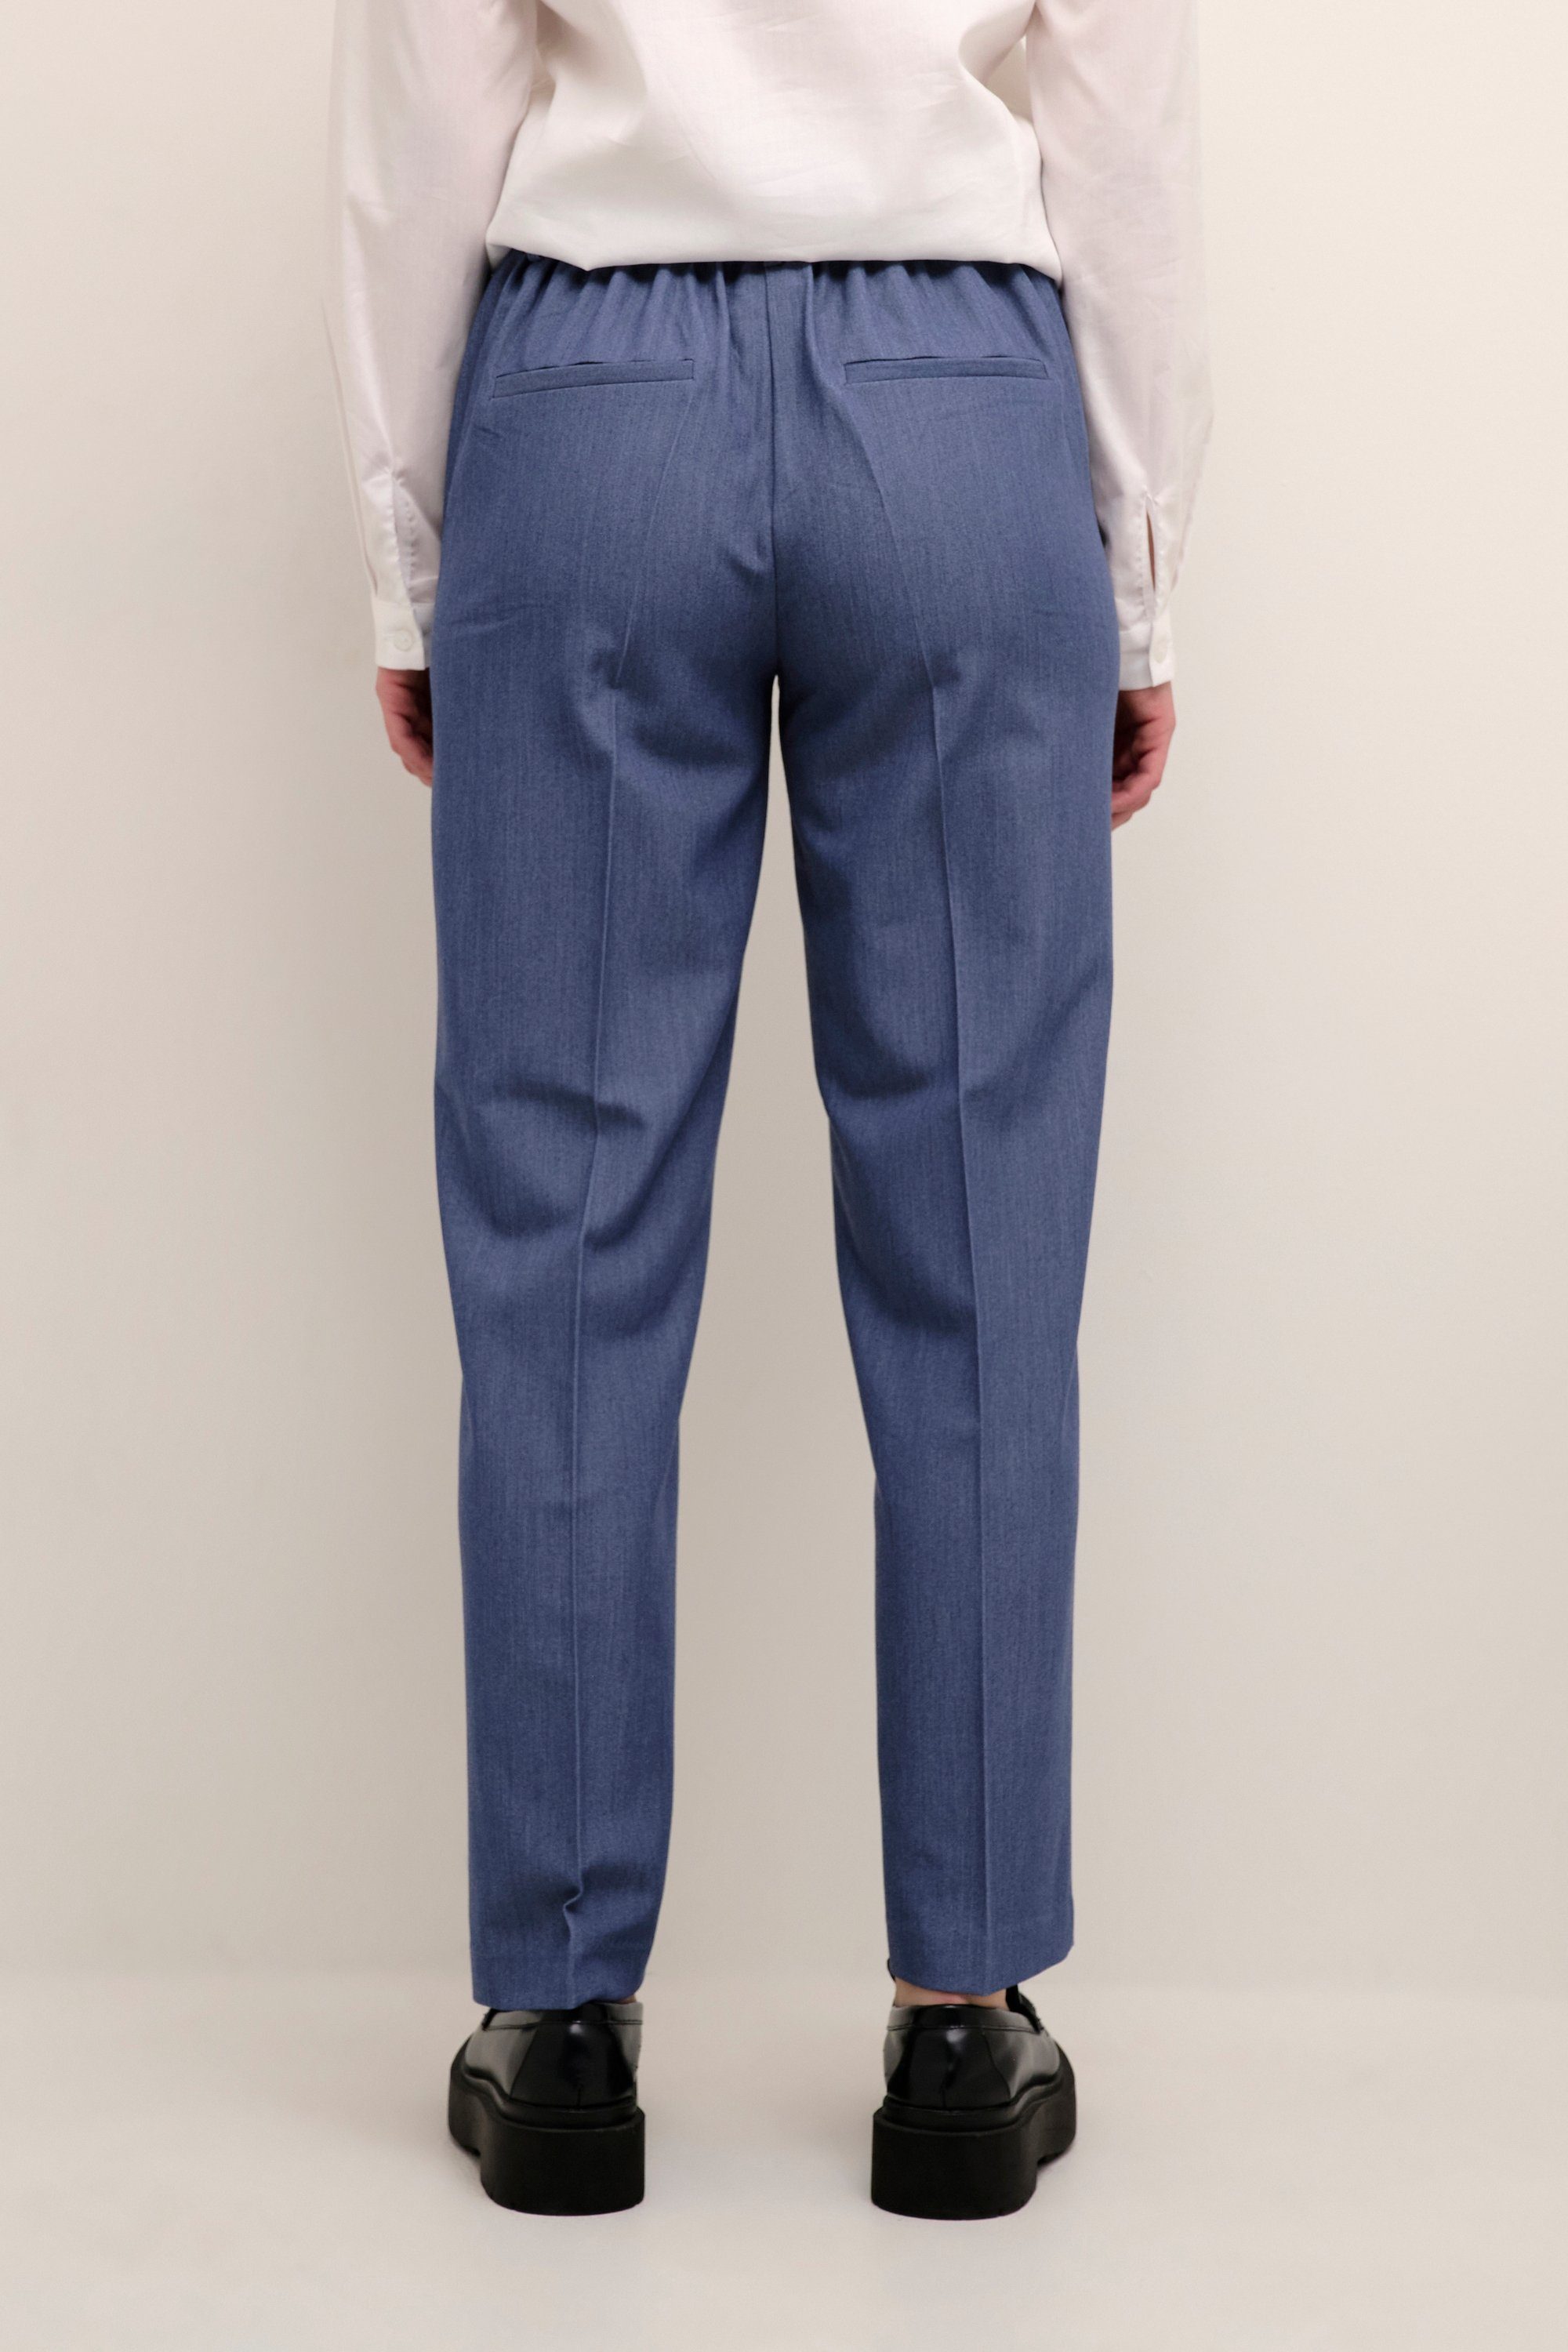 KAFFE Anzughose Indigo Pants Suiting Vintage KAsakura